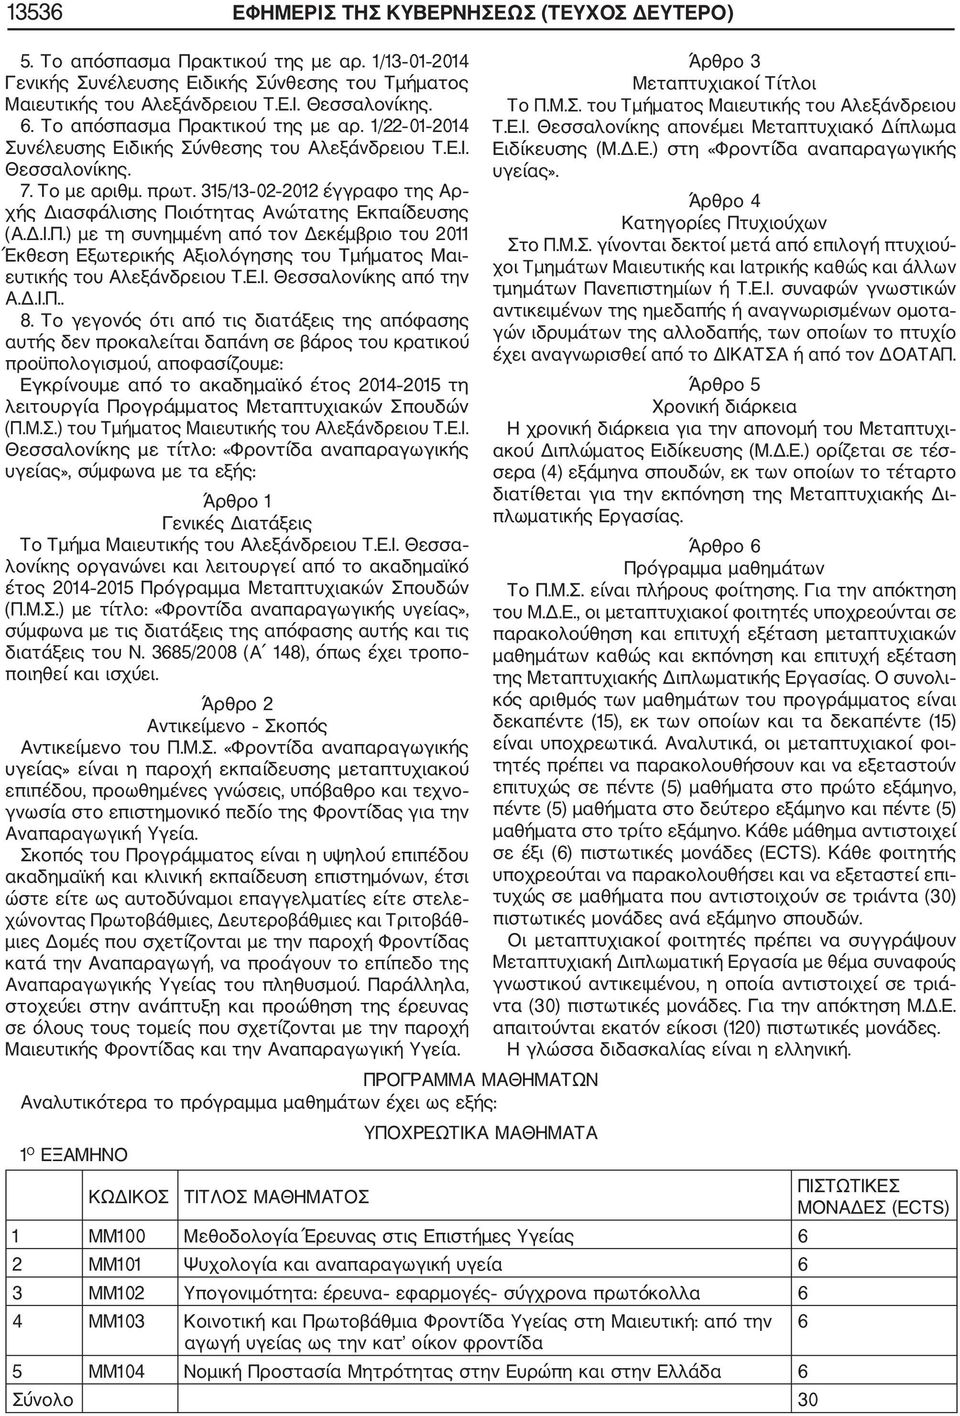 315/13 02 2012 έγγραφο της Αρ χής Διασφάλισης Ποιότητας Ανώτατης Εκπαίδευσης (Α.Δ.Ι.Π.) με τη συνημμένη από τον Δεκέμβριο του 2011 Έκθεση Εξωτερικής Αξιολόγησης του Τμήματος Μαι ευτικής του Αλεξάνδρειου Τ.